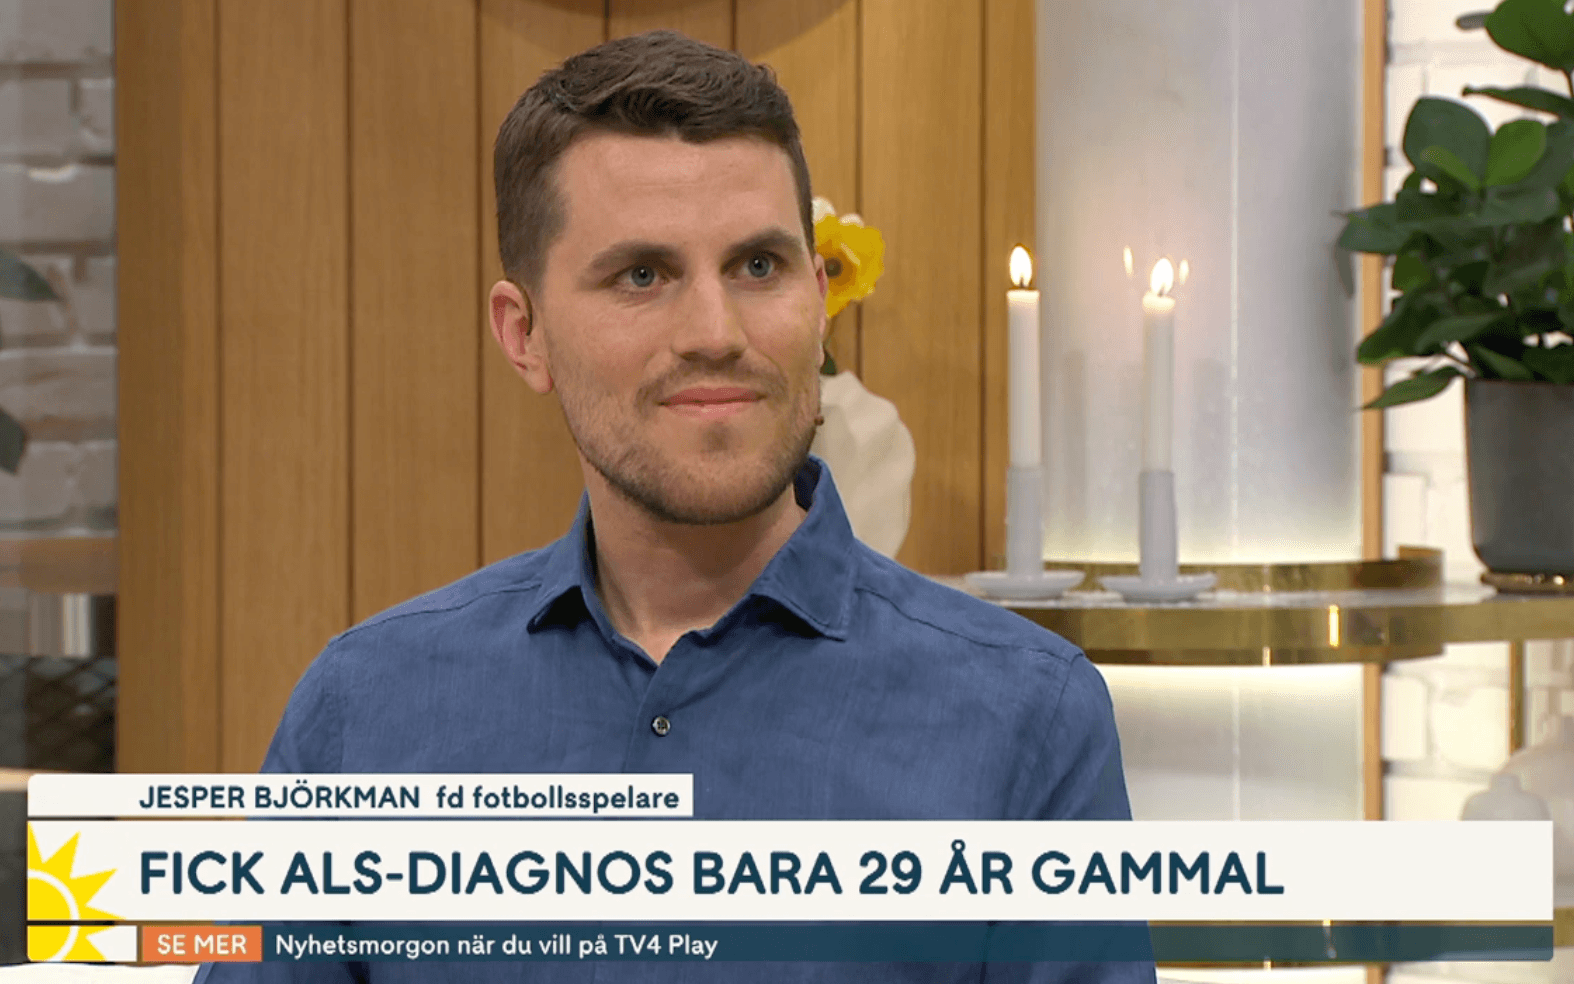 Jesper Björkman tvingades lägga av som 29-åring som fotbollsspelare. Nyligen gick han ut och berättade att han hade drabbats av sjukdomen ALS.